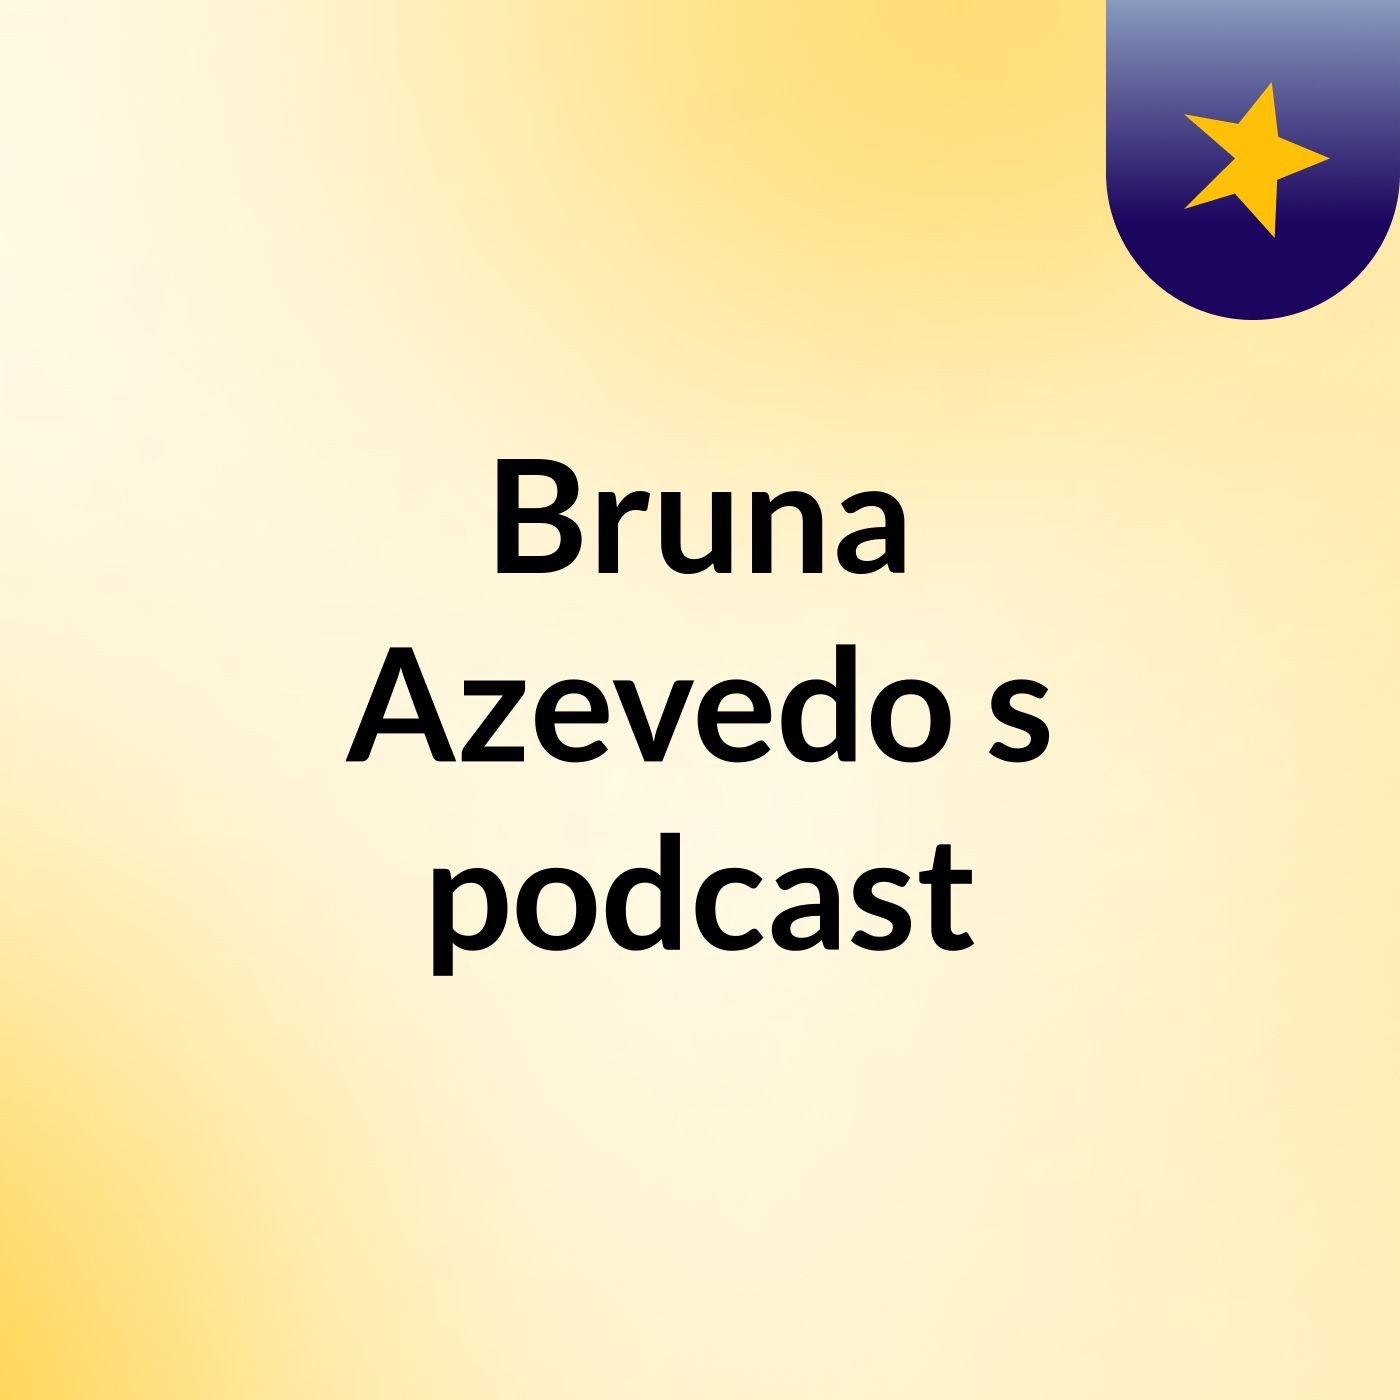 Bruna Azevedo's podcast